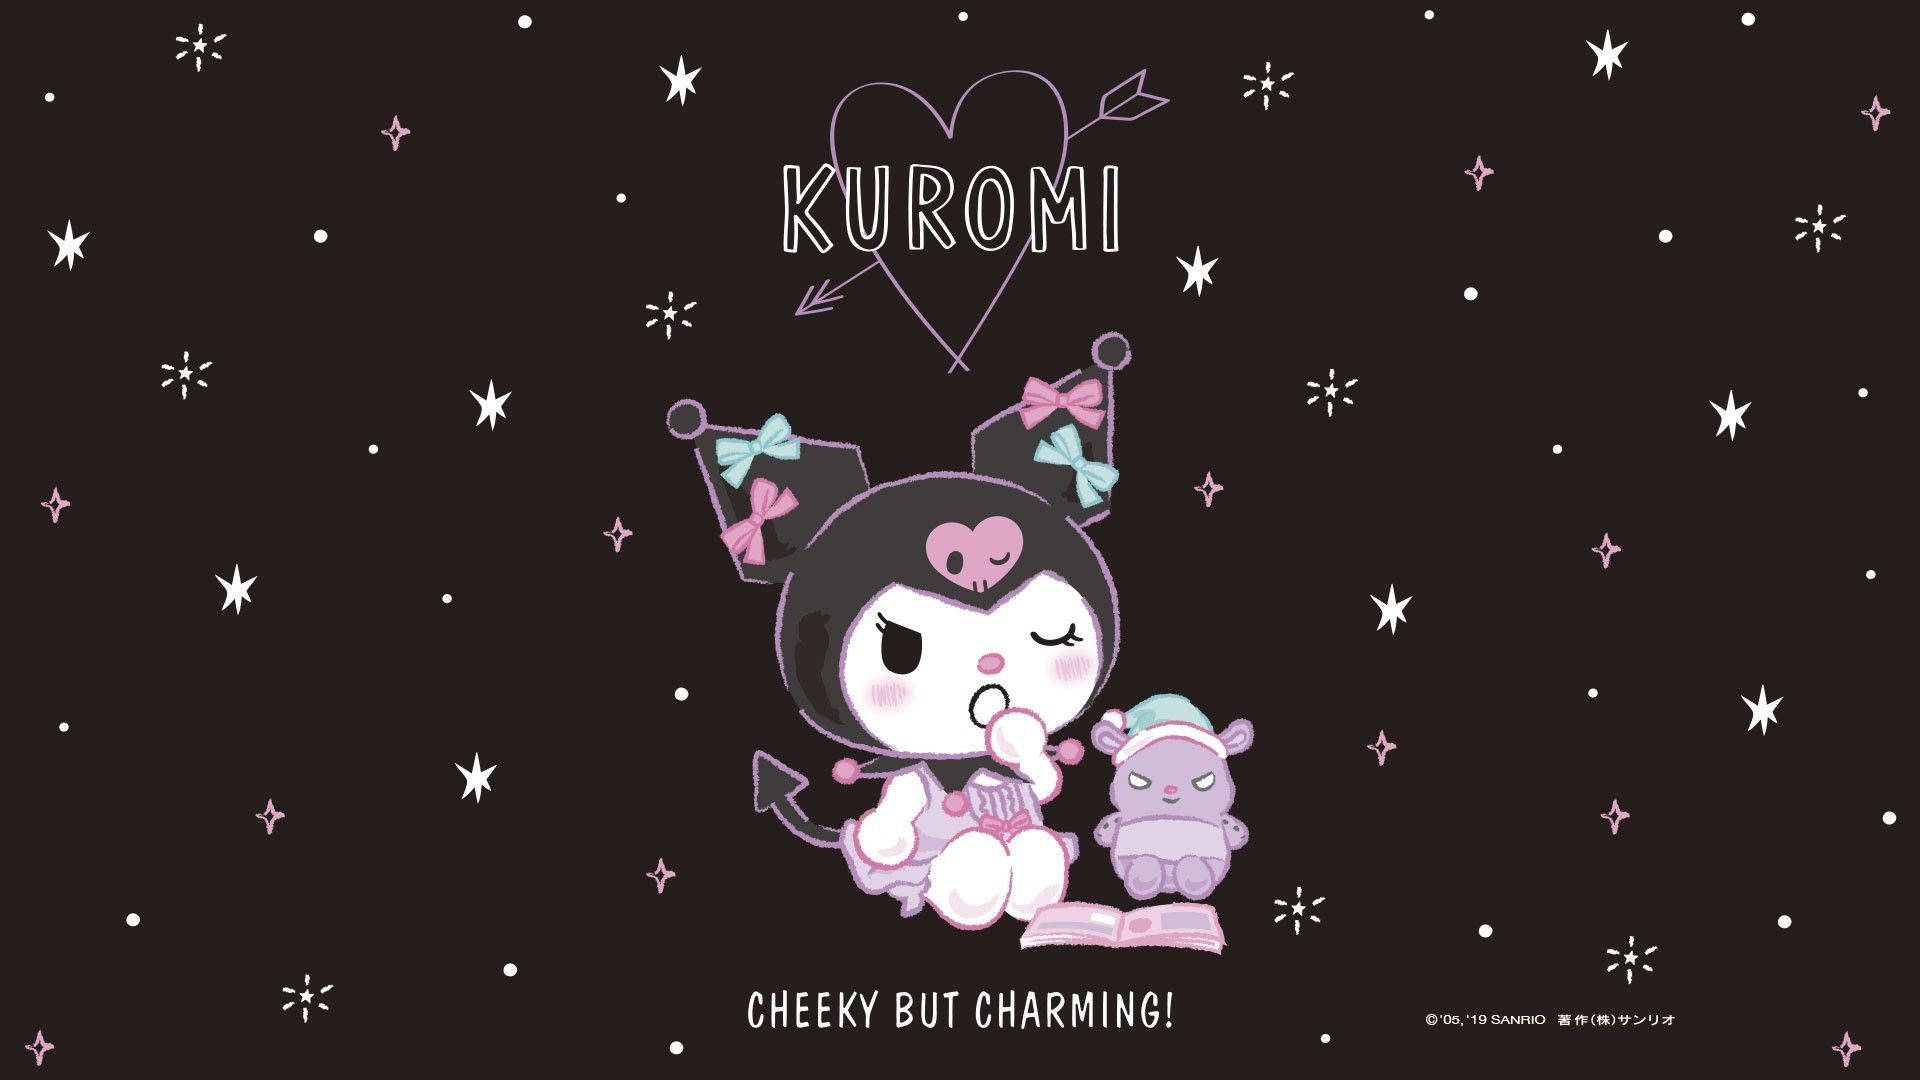 Kuromi background: Kuromi là nhân vật nổi tiếng trong thế giới anime, được yêu thích bởi rất nhiều fan hâm mộ. Bạn có muốn tạo không gian làm việc mới cho máy tính của mình với hình nền Kuromi xinh đẹp? Thật may, chúng tôi có bộ sưu tập hình nền Kuromi đẹp nhất dành cho bạn. Hãy xem hình ảnh để chọn lựa.